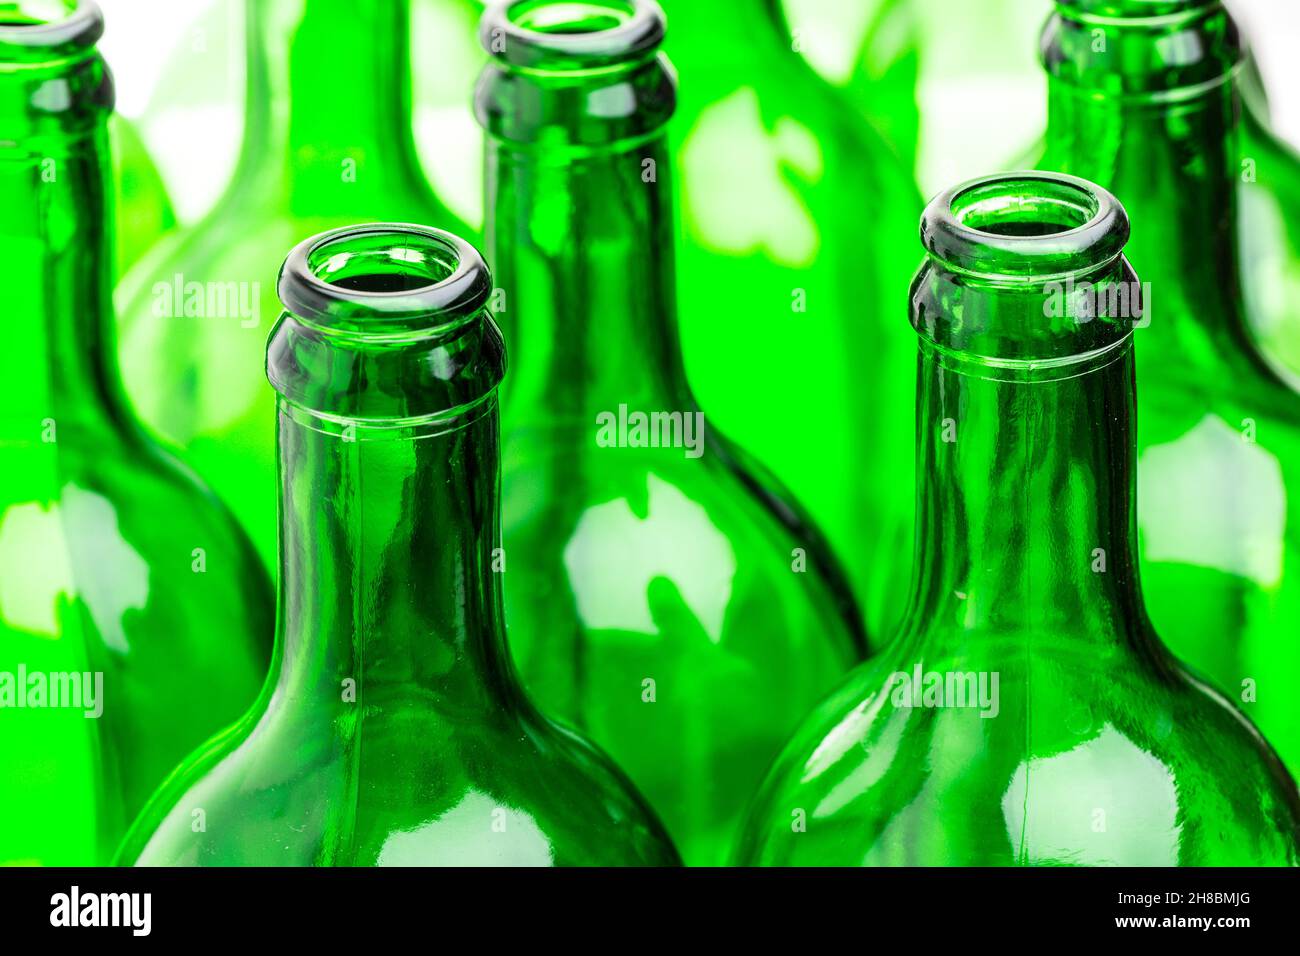 Molte bottiglie verdi in una fila Foto Stock